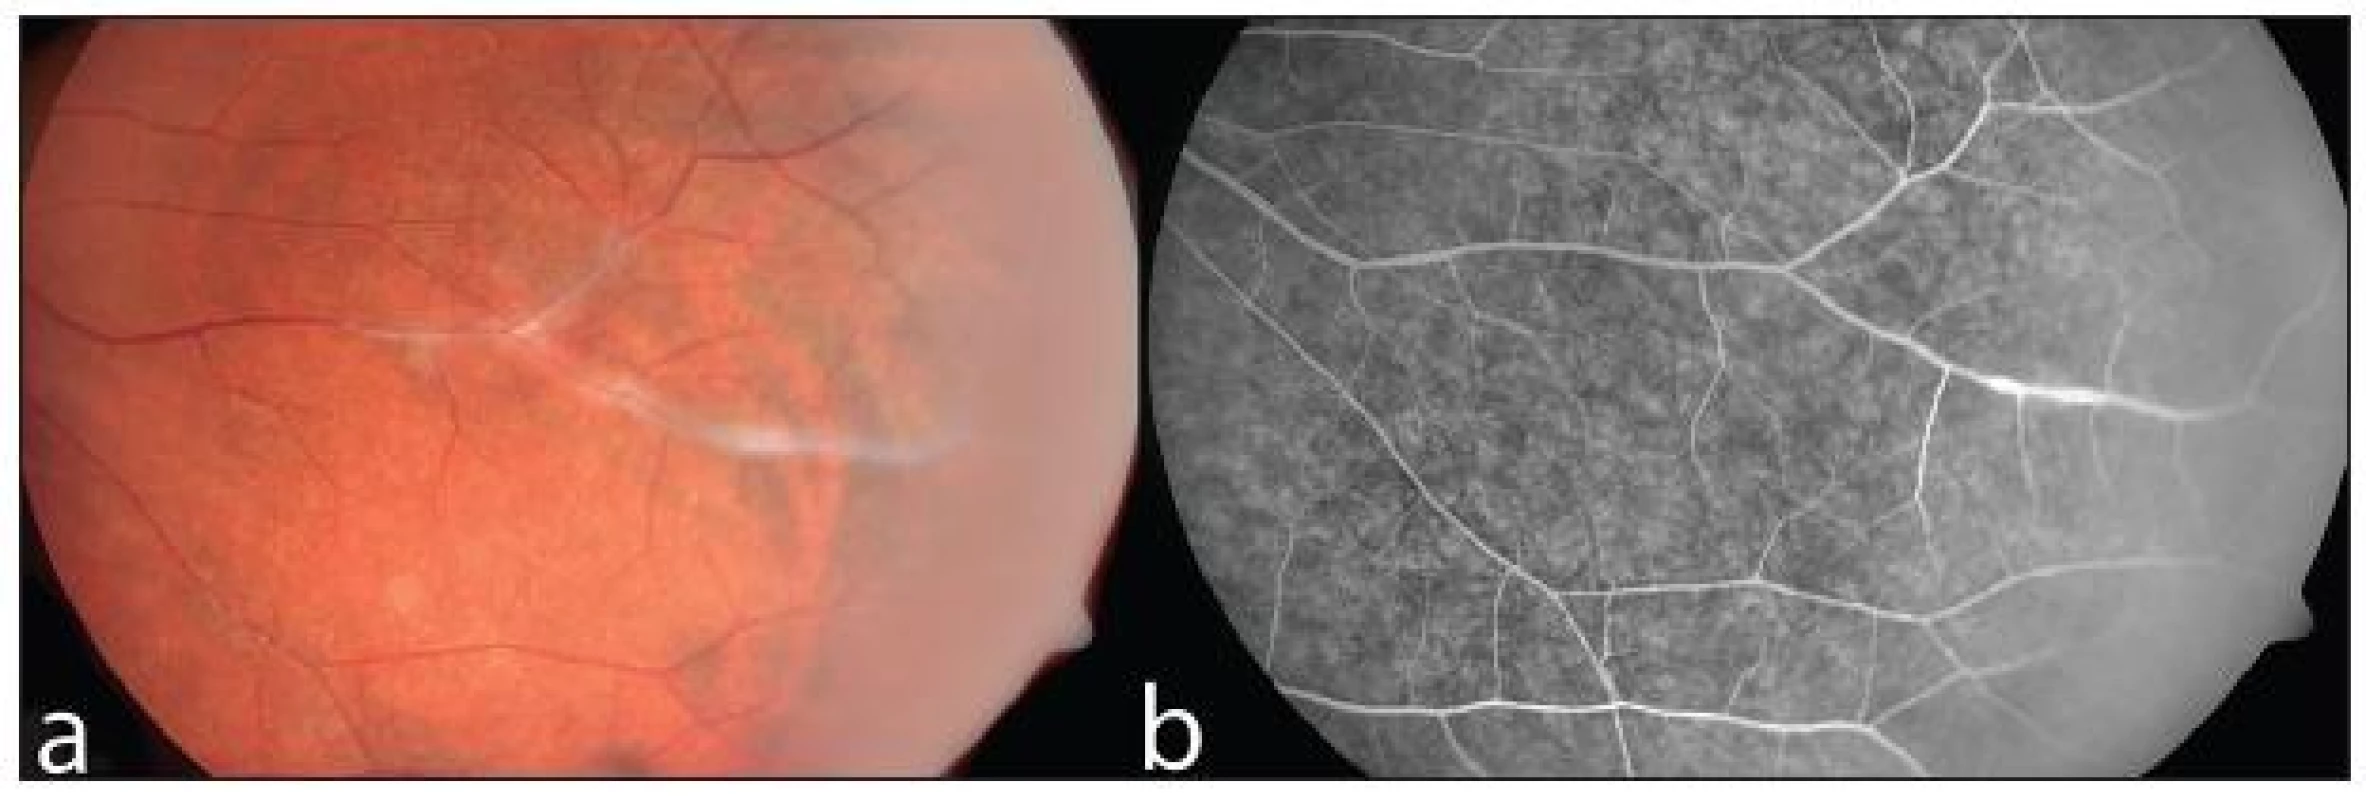 Neaktivní vaskulitida u pacienta s Crohnovou nemocí na barevném snímku očního pozadí (a) a při vyšetření fluorescenční angiografií (b)